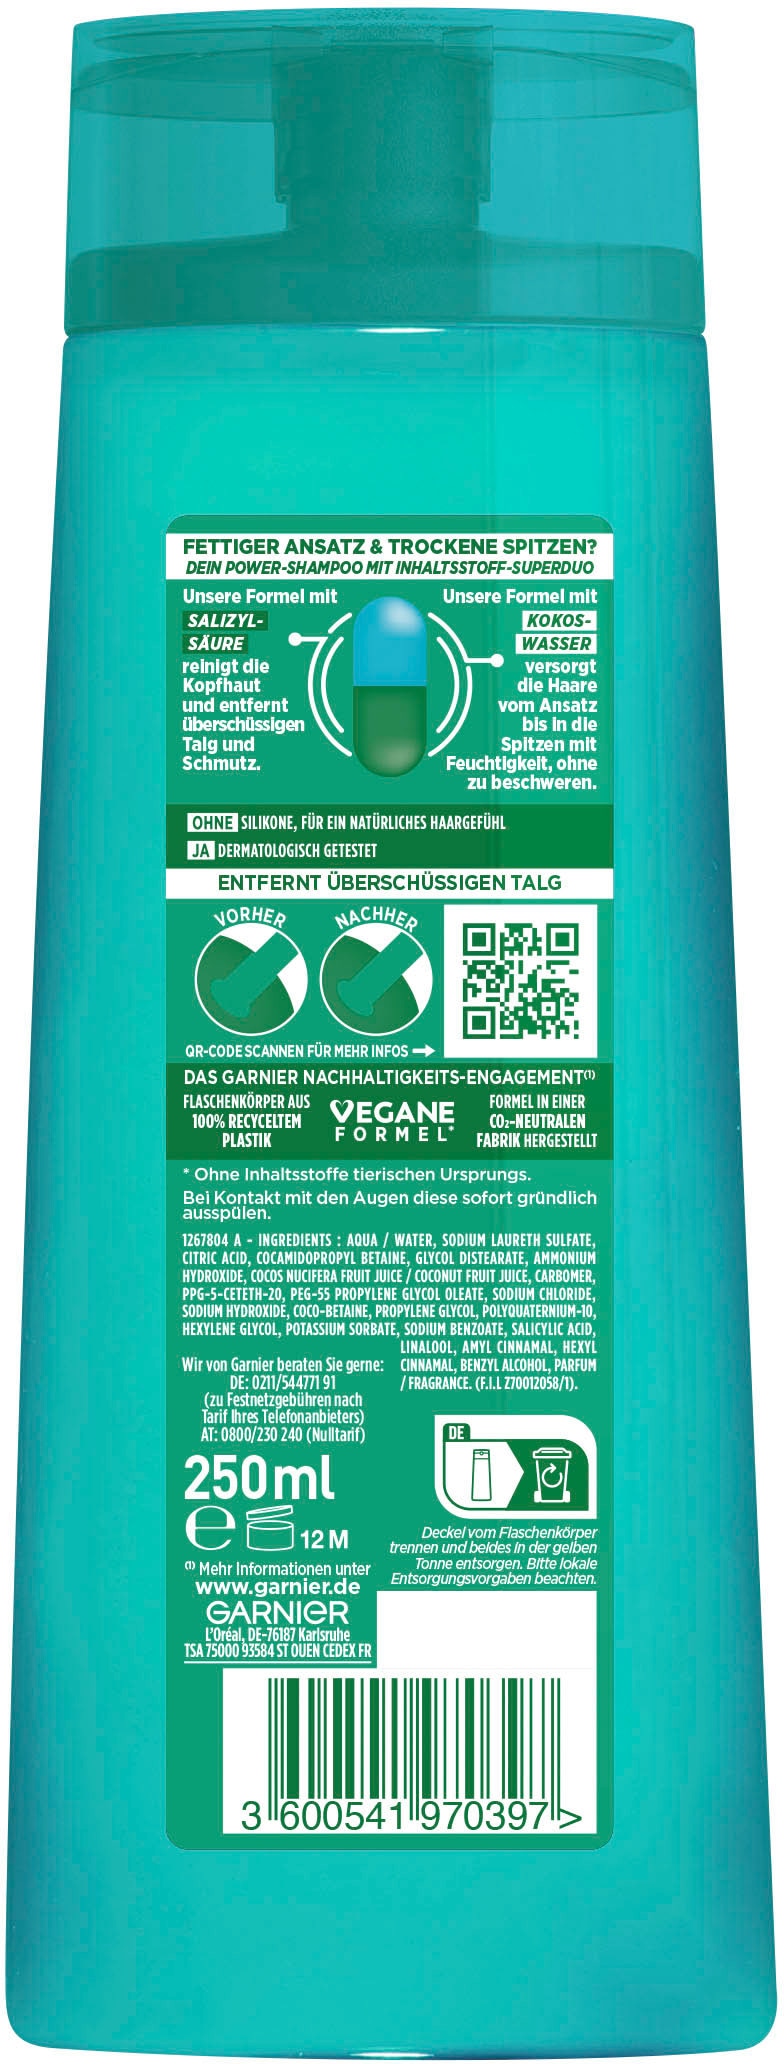 GARNIER Haarshampoo »Garnier Fructis Coco Water Shampoo« online bei  UNIVERSAL